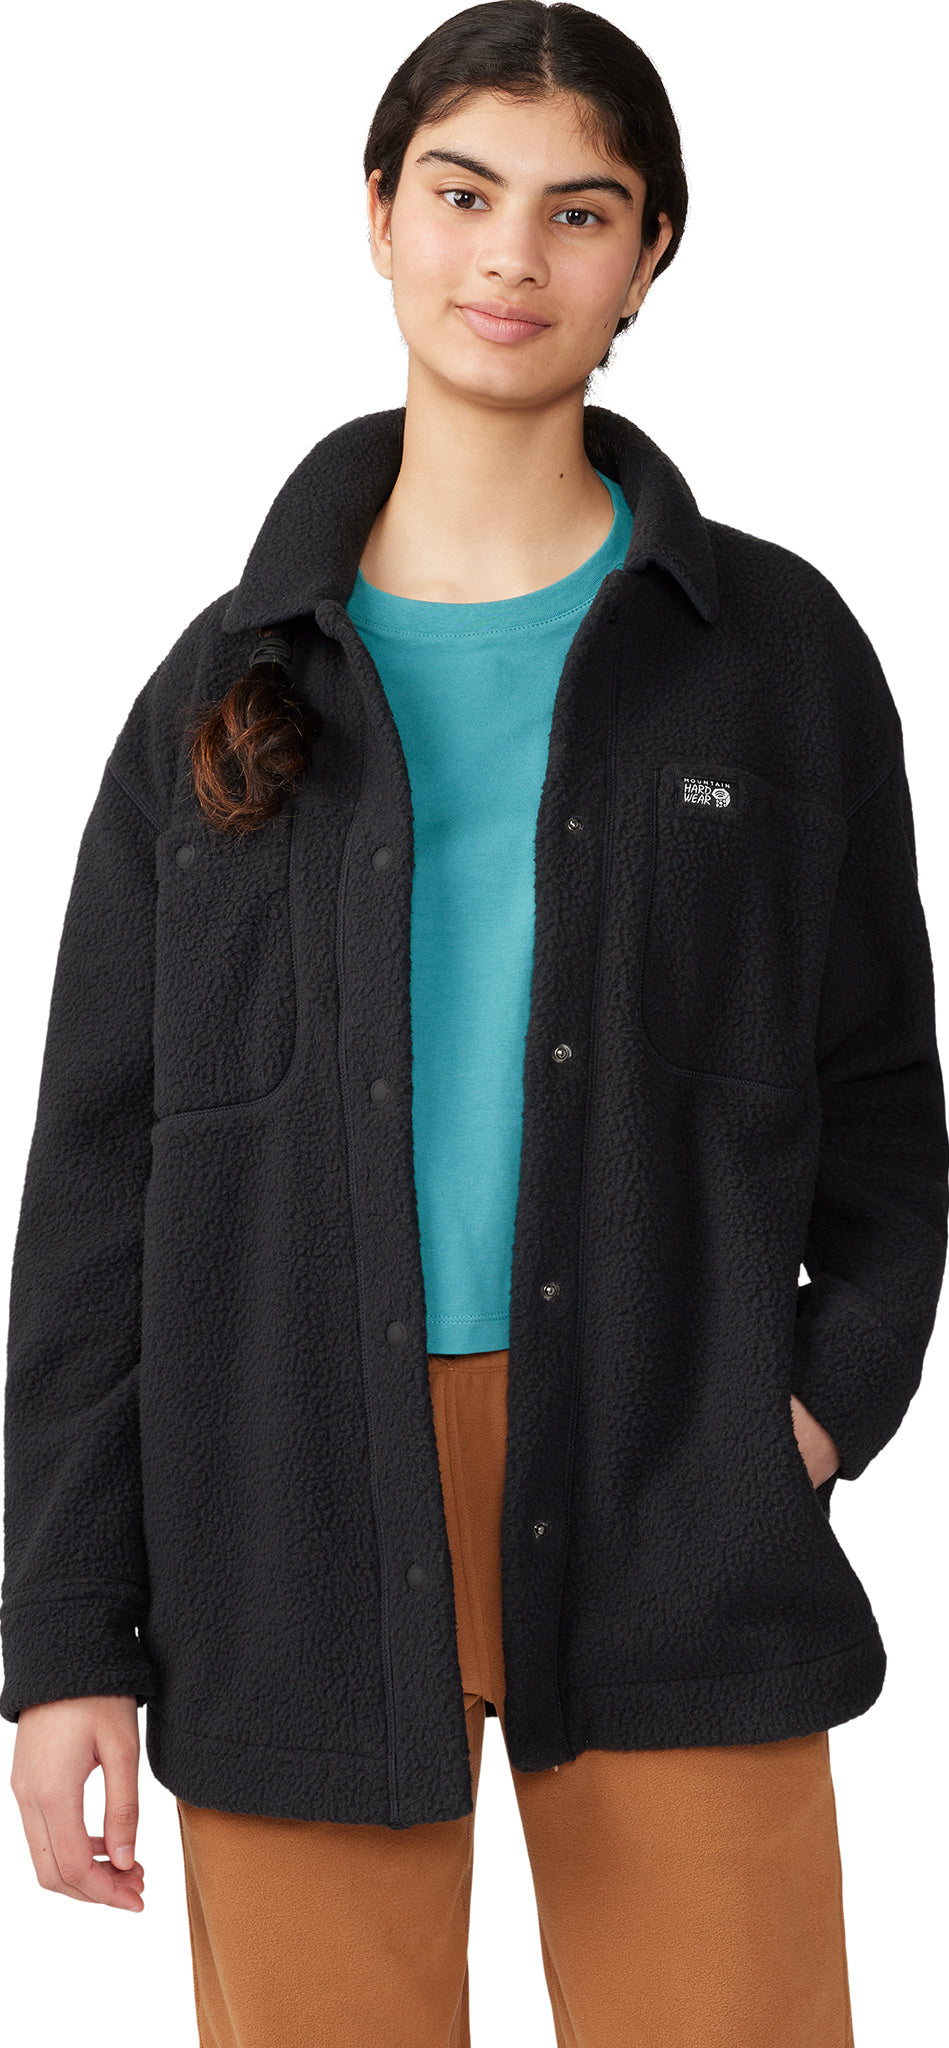 Mountain Hardwear HiCamp Fleece Long Full Zip Jacket - Women's